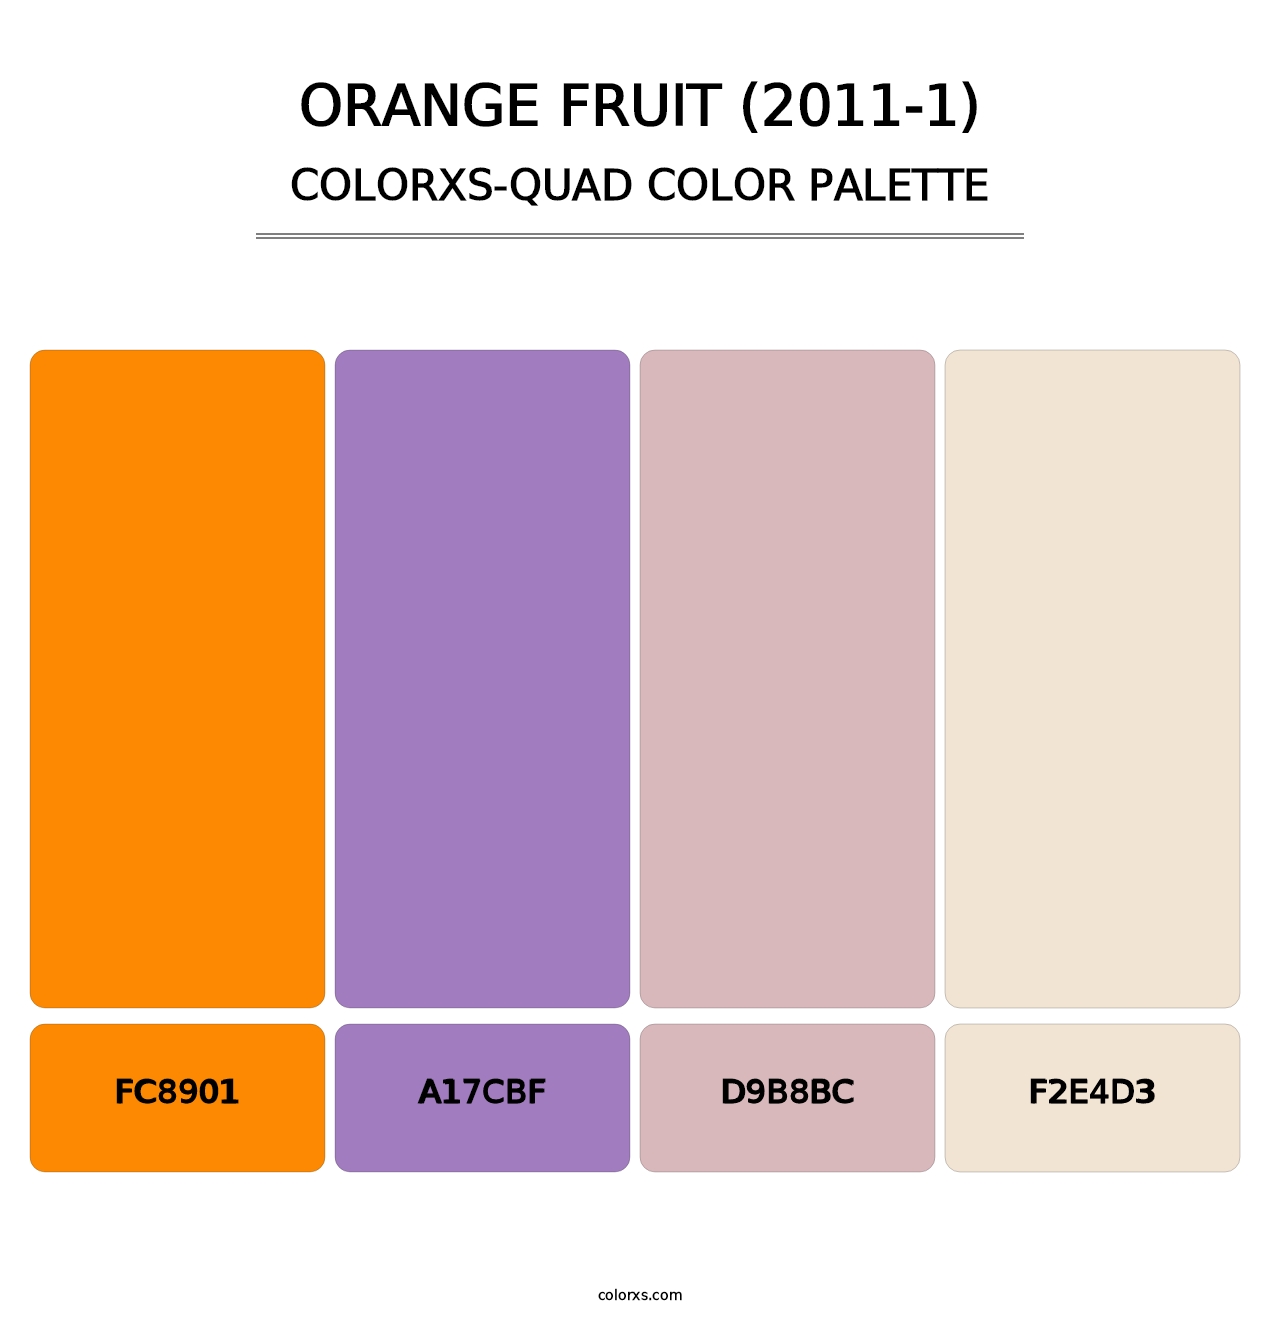 Orange Fruit (2011-1) - Colorxs Quad Palette